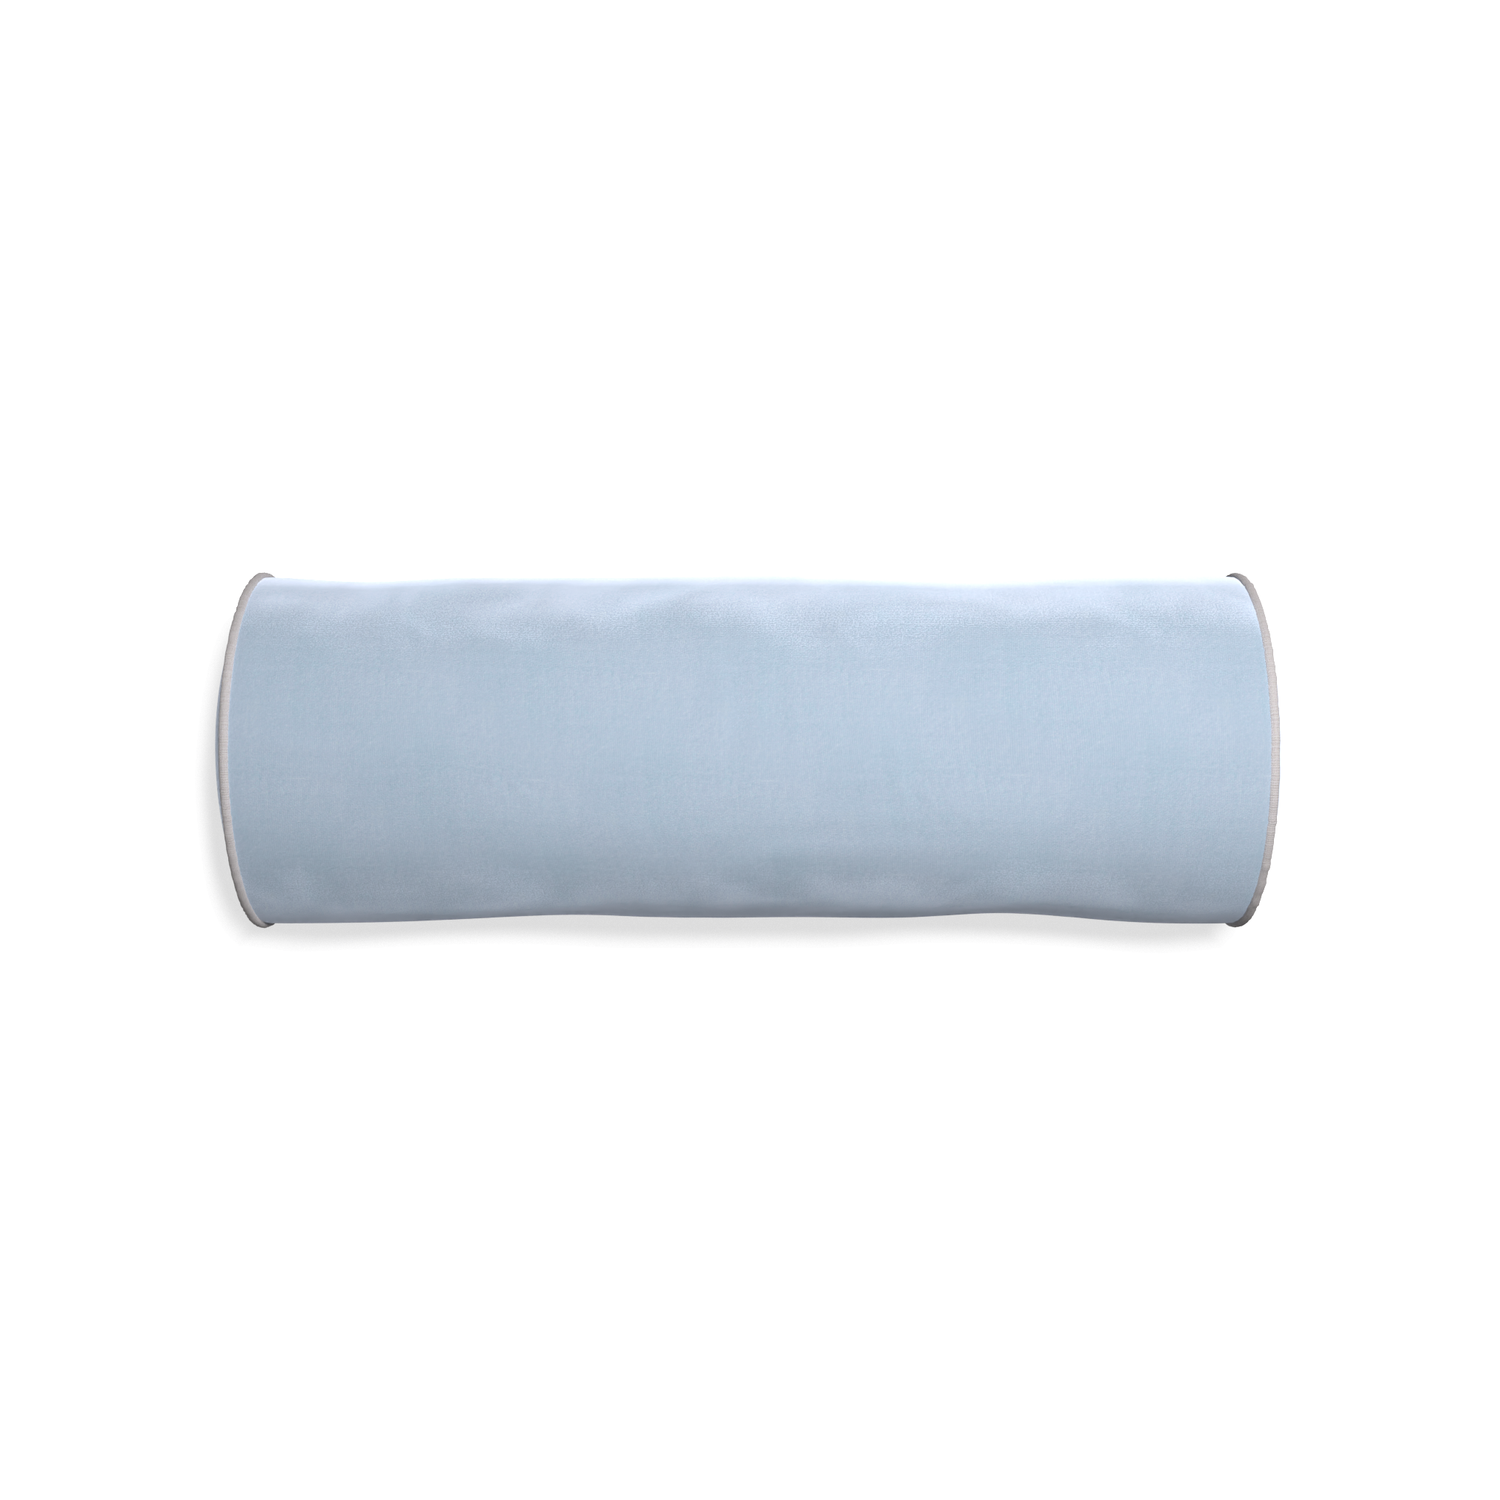 bolster light blue velvet pillow with gray piping 